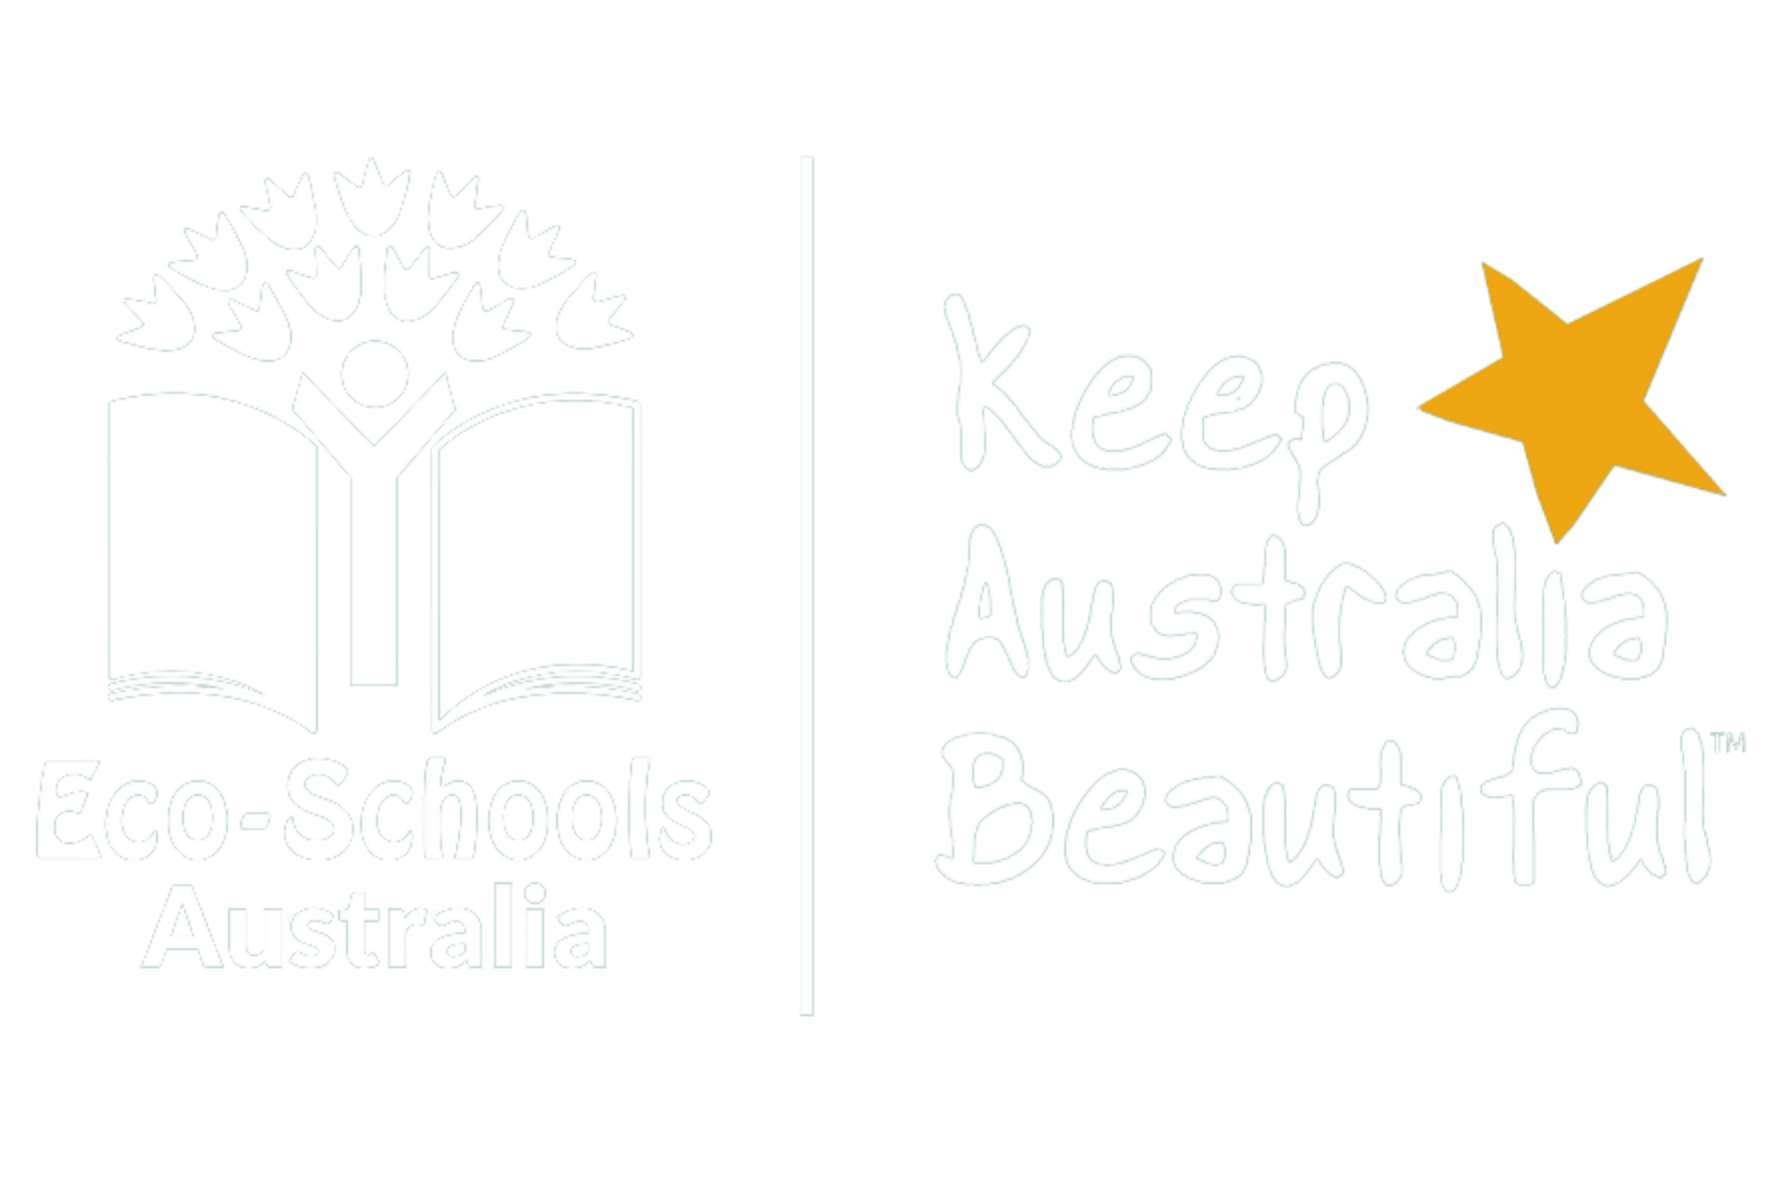 Eco-Schools Australia